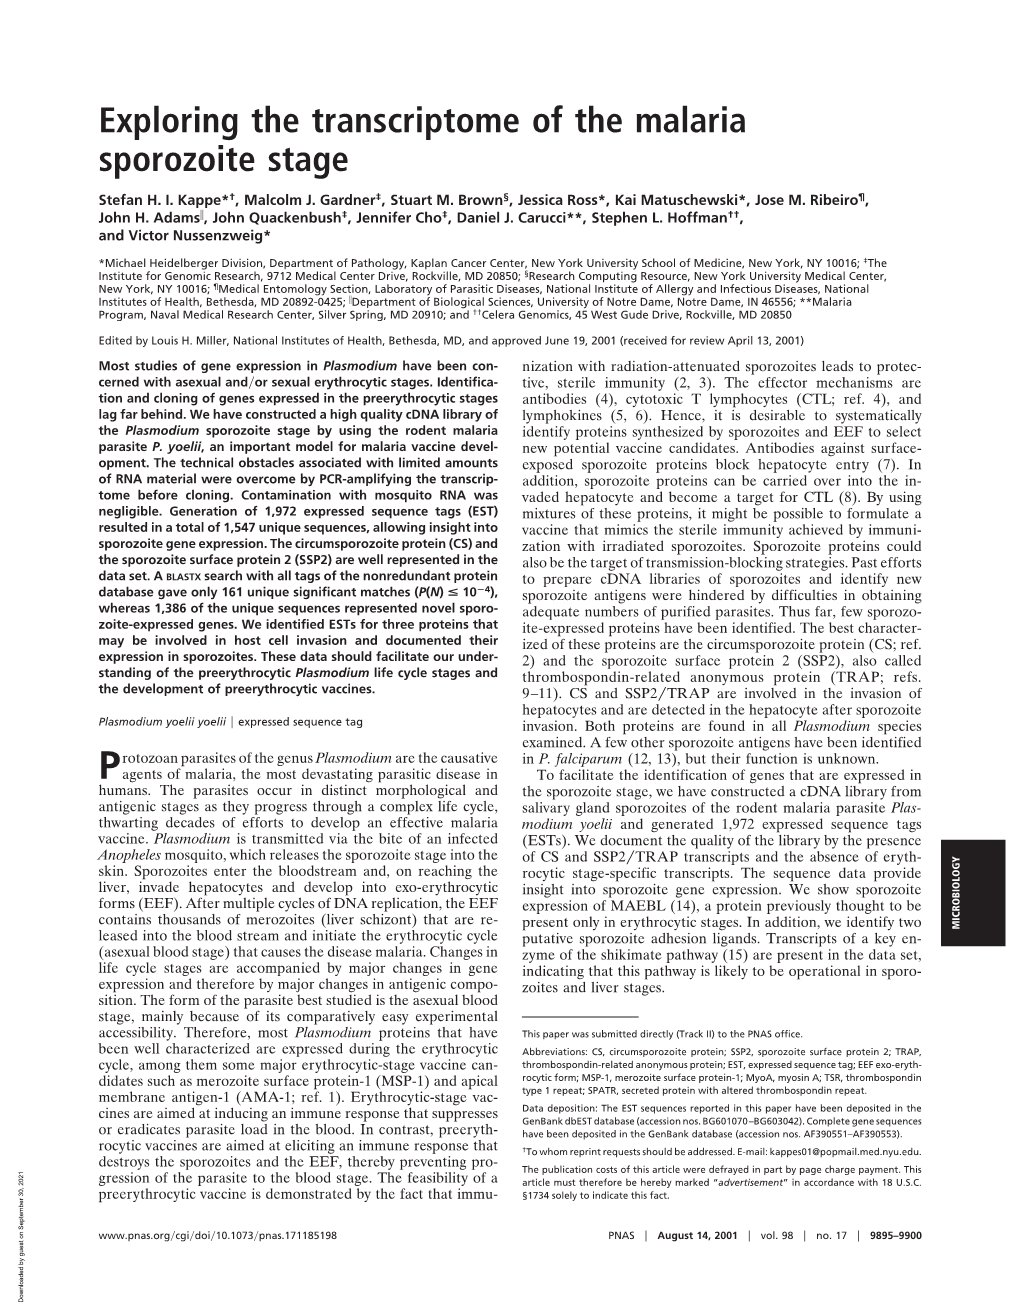 Exploring the Transcriptome of the Malaria Sporozoite Stage